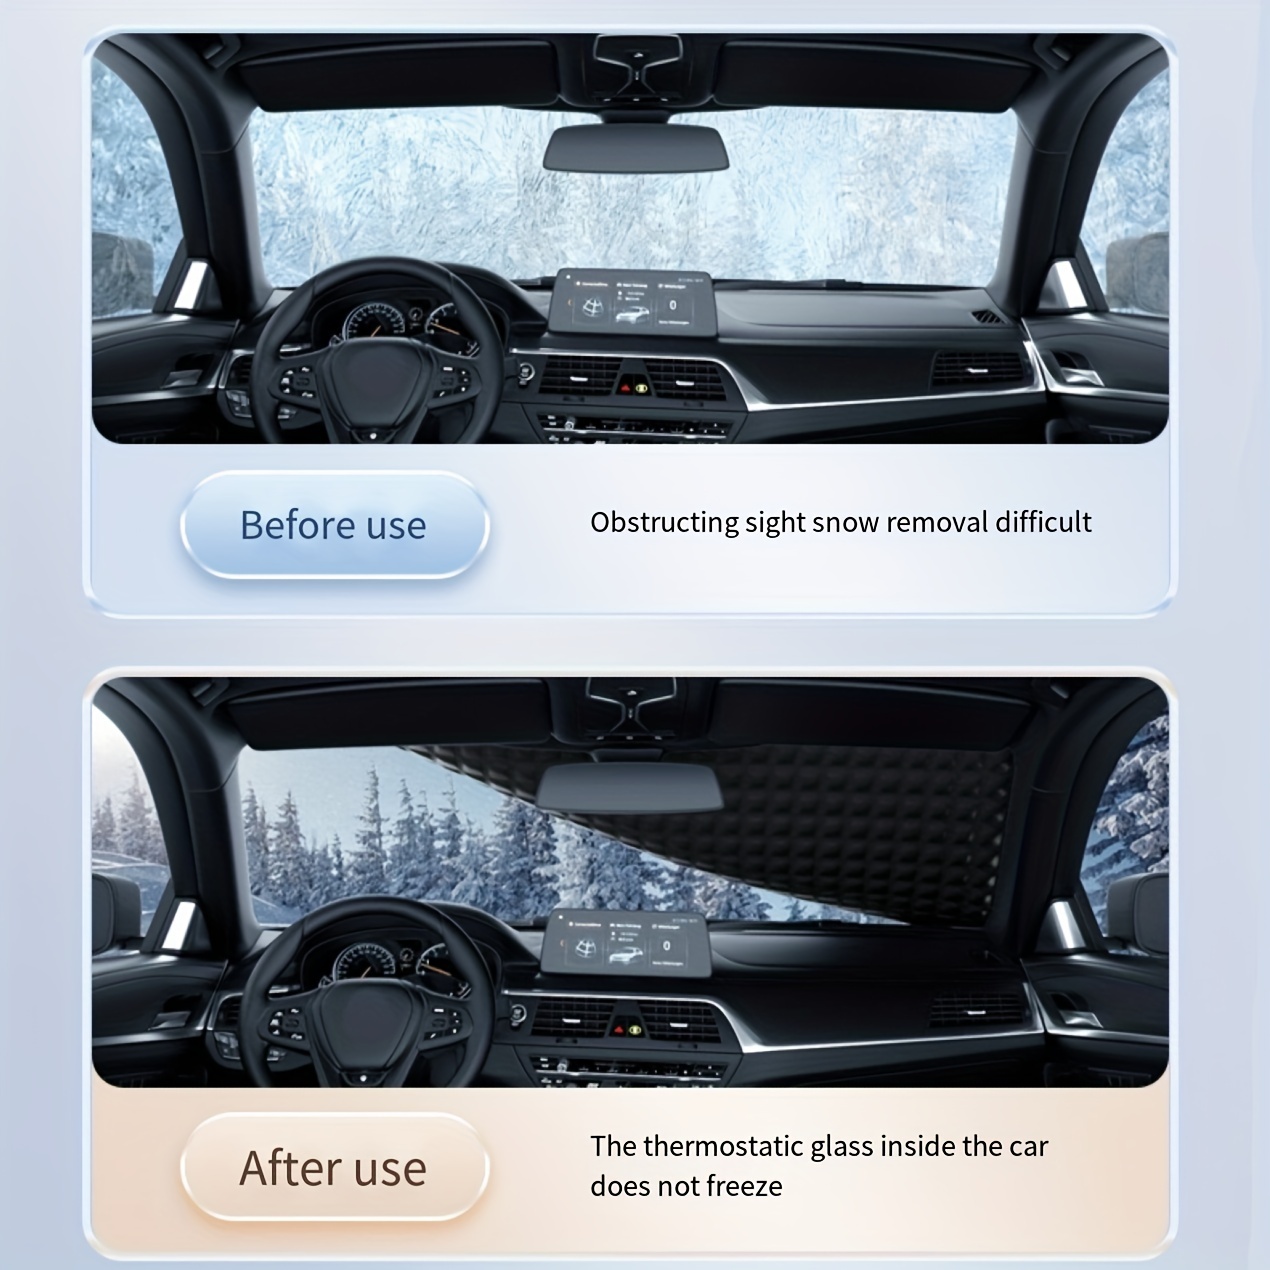 Protection de pare-brise Anti-neige | Pare-brise de voiture, Protection  contre la neige et le gel de l'omb - Modèle: - ANZYBUA02499